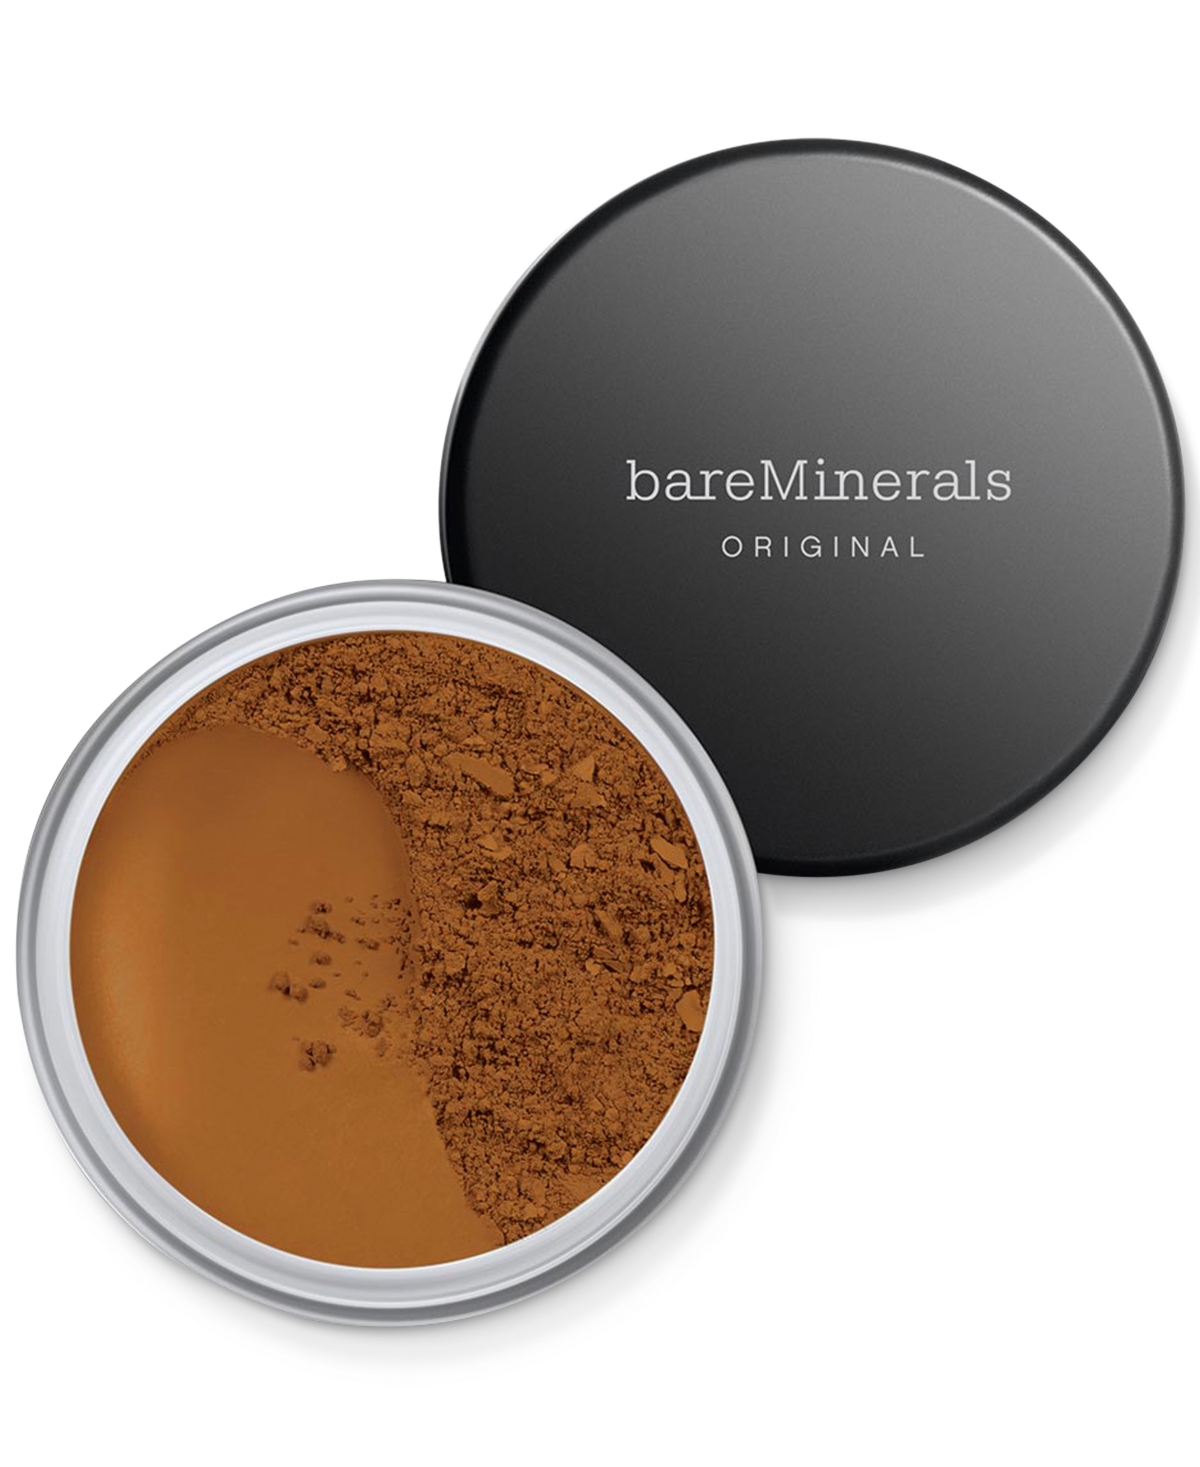 Bareminerals Original Loose Powder Foundation Spf 15 In Neutral Dark  - For Dark Skin With Neutr